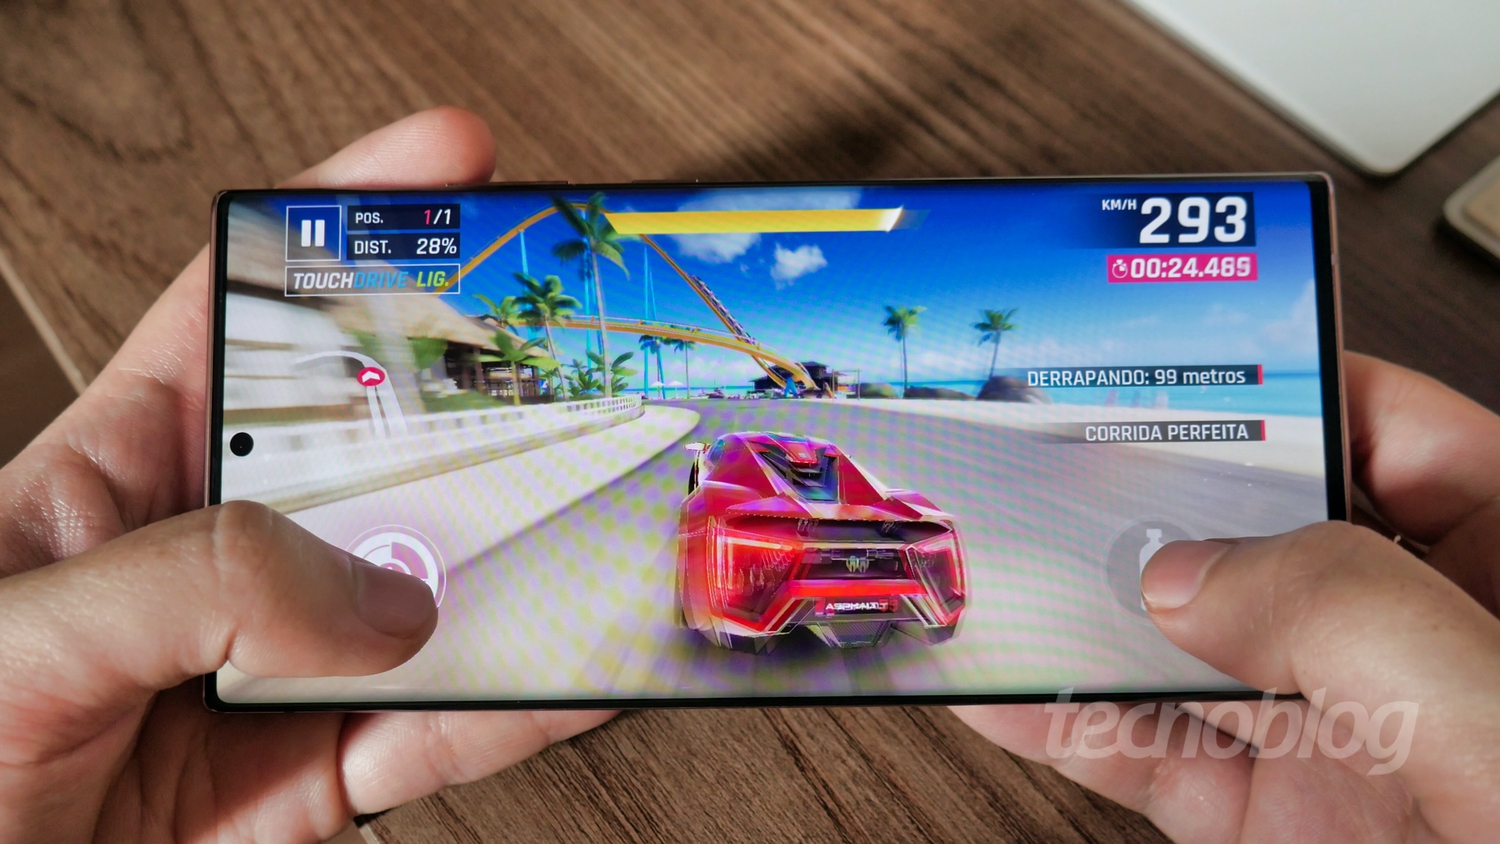 20 Jogos Perfeitos para o Samsung Galaxy J5 - Mobile Gamer